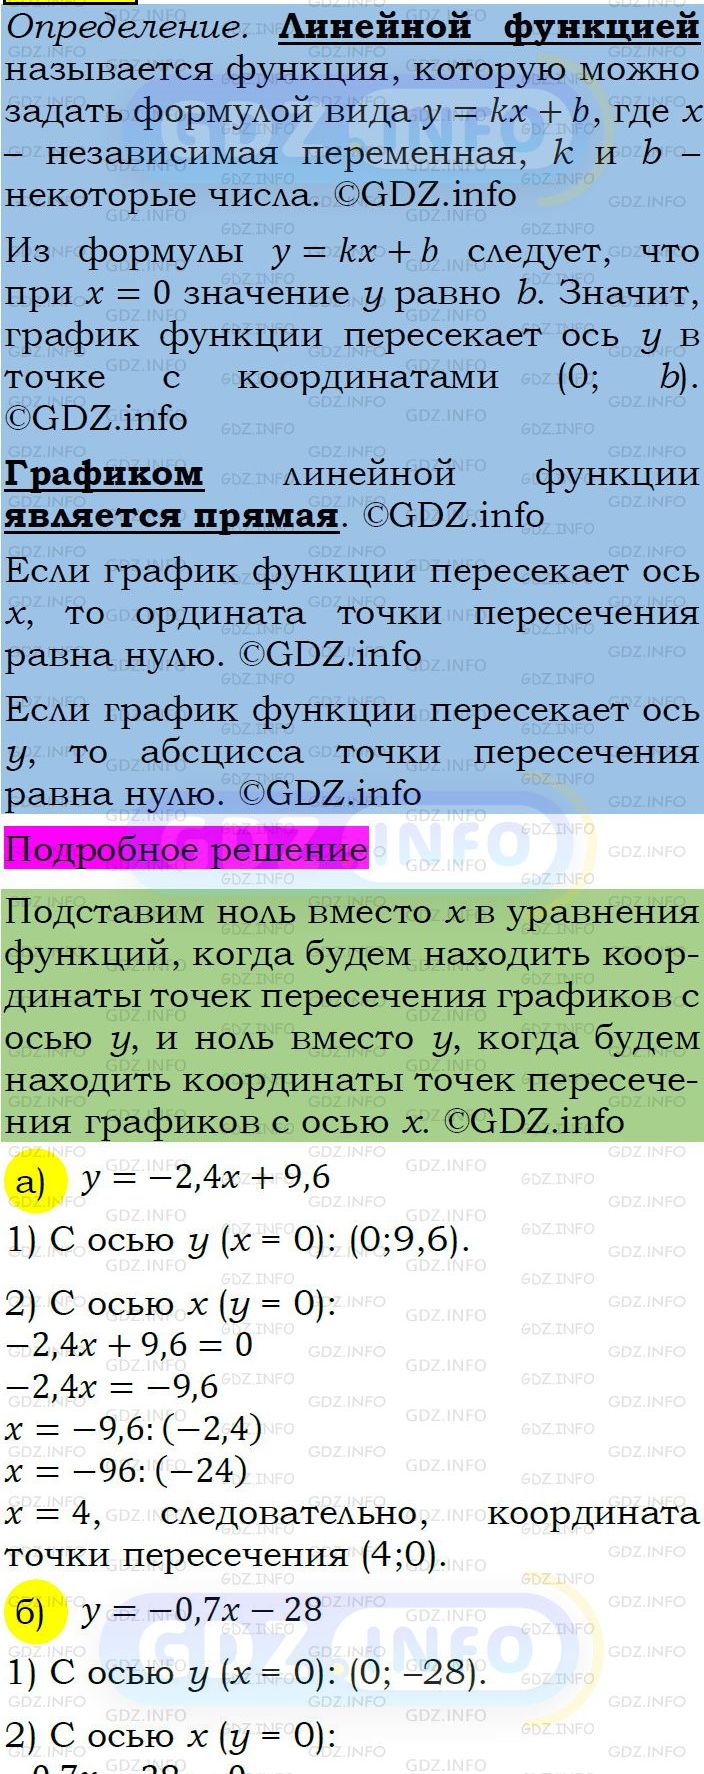 Фото подробного решения: Номер задания №322 из ГДЗ по Алгебре 7 класс: Макарычев Ю.Н.